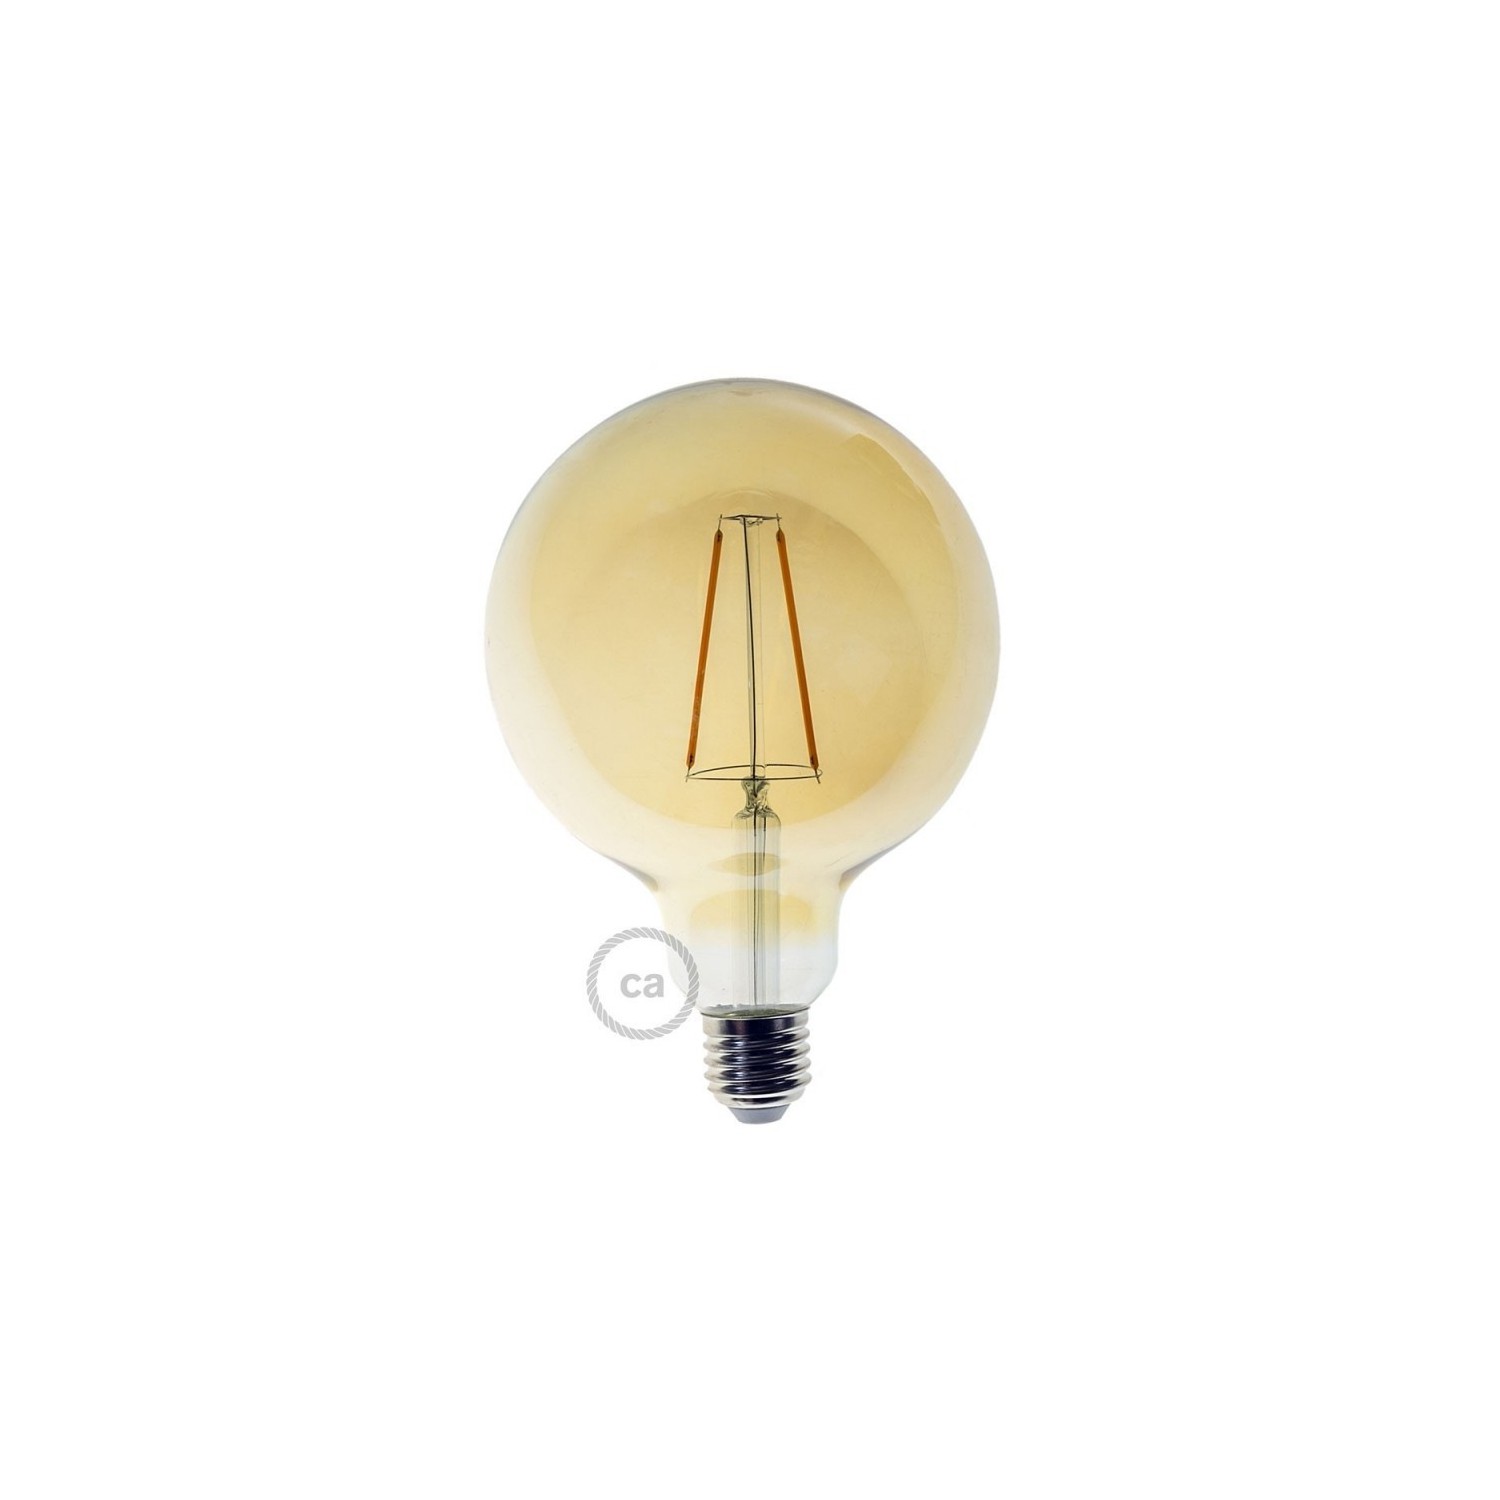 Bombillo dorado LED Globo G125 de 4W decorativa vintage y luz cálida 2500K - LCO086L